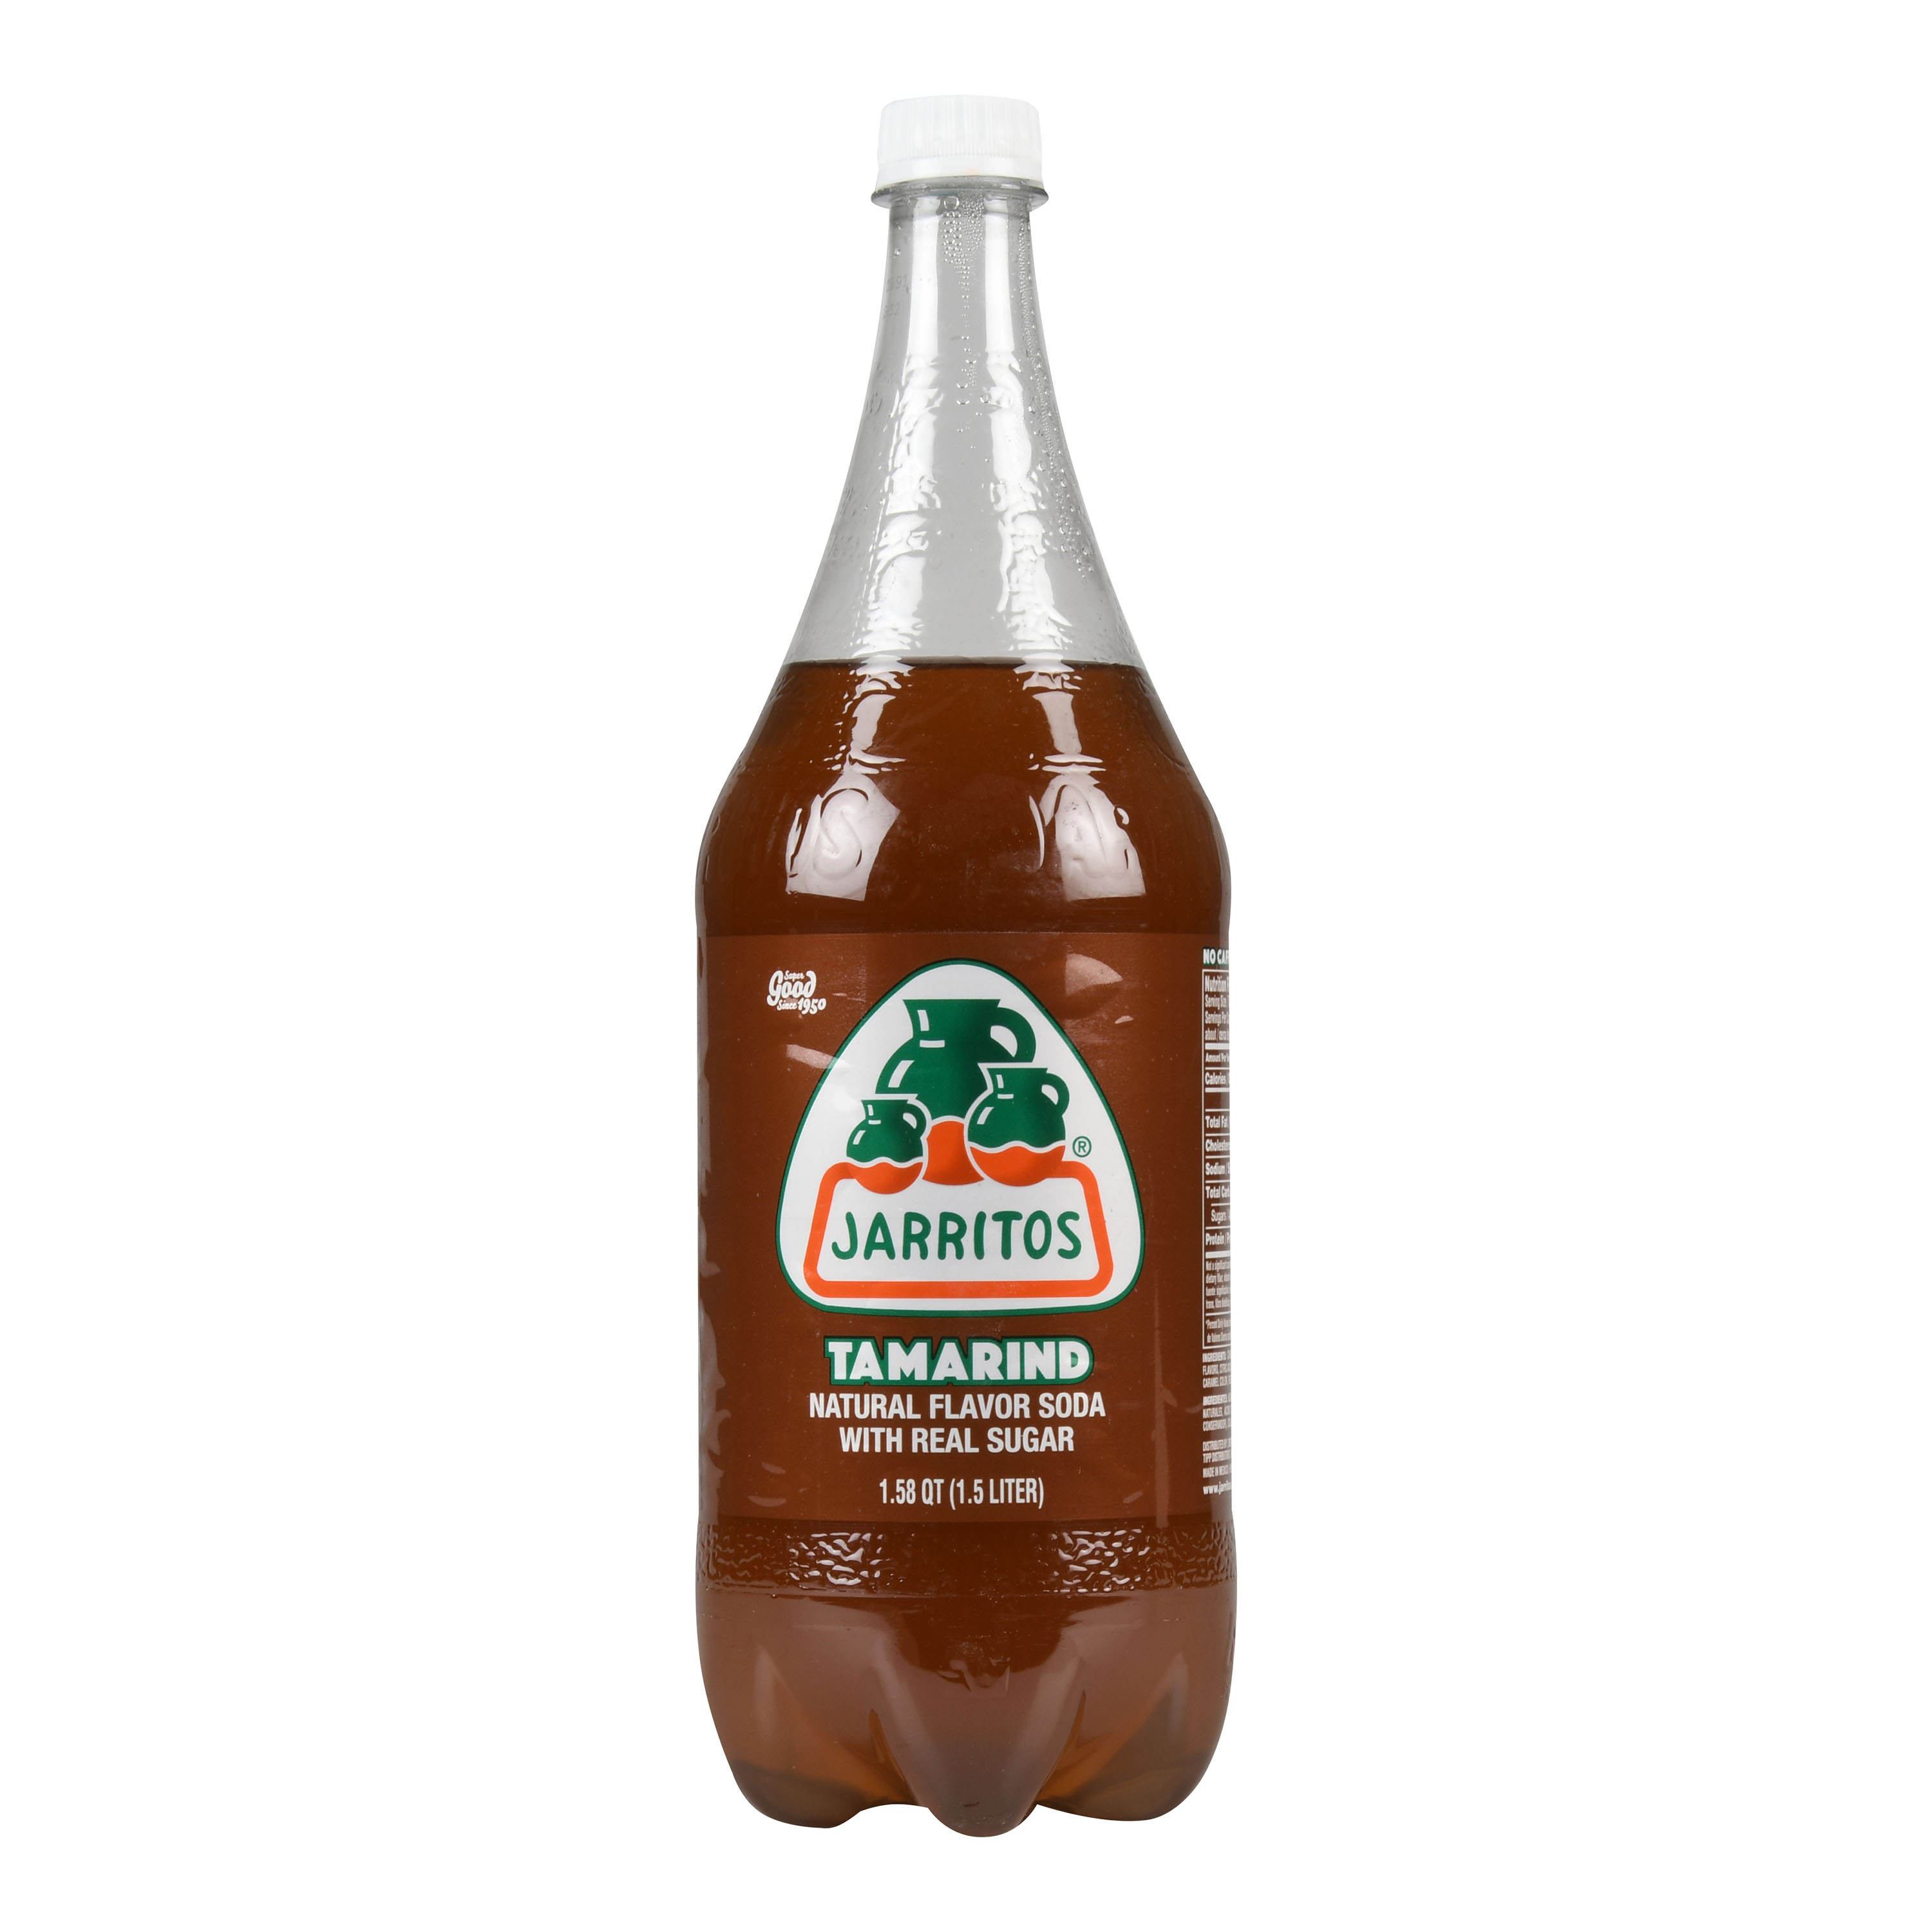 Jarritos Tamarind Soda, 1.58 qt - image 1 of 2